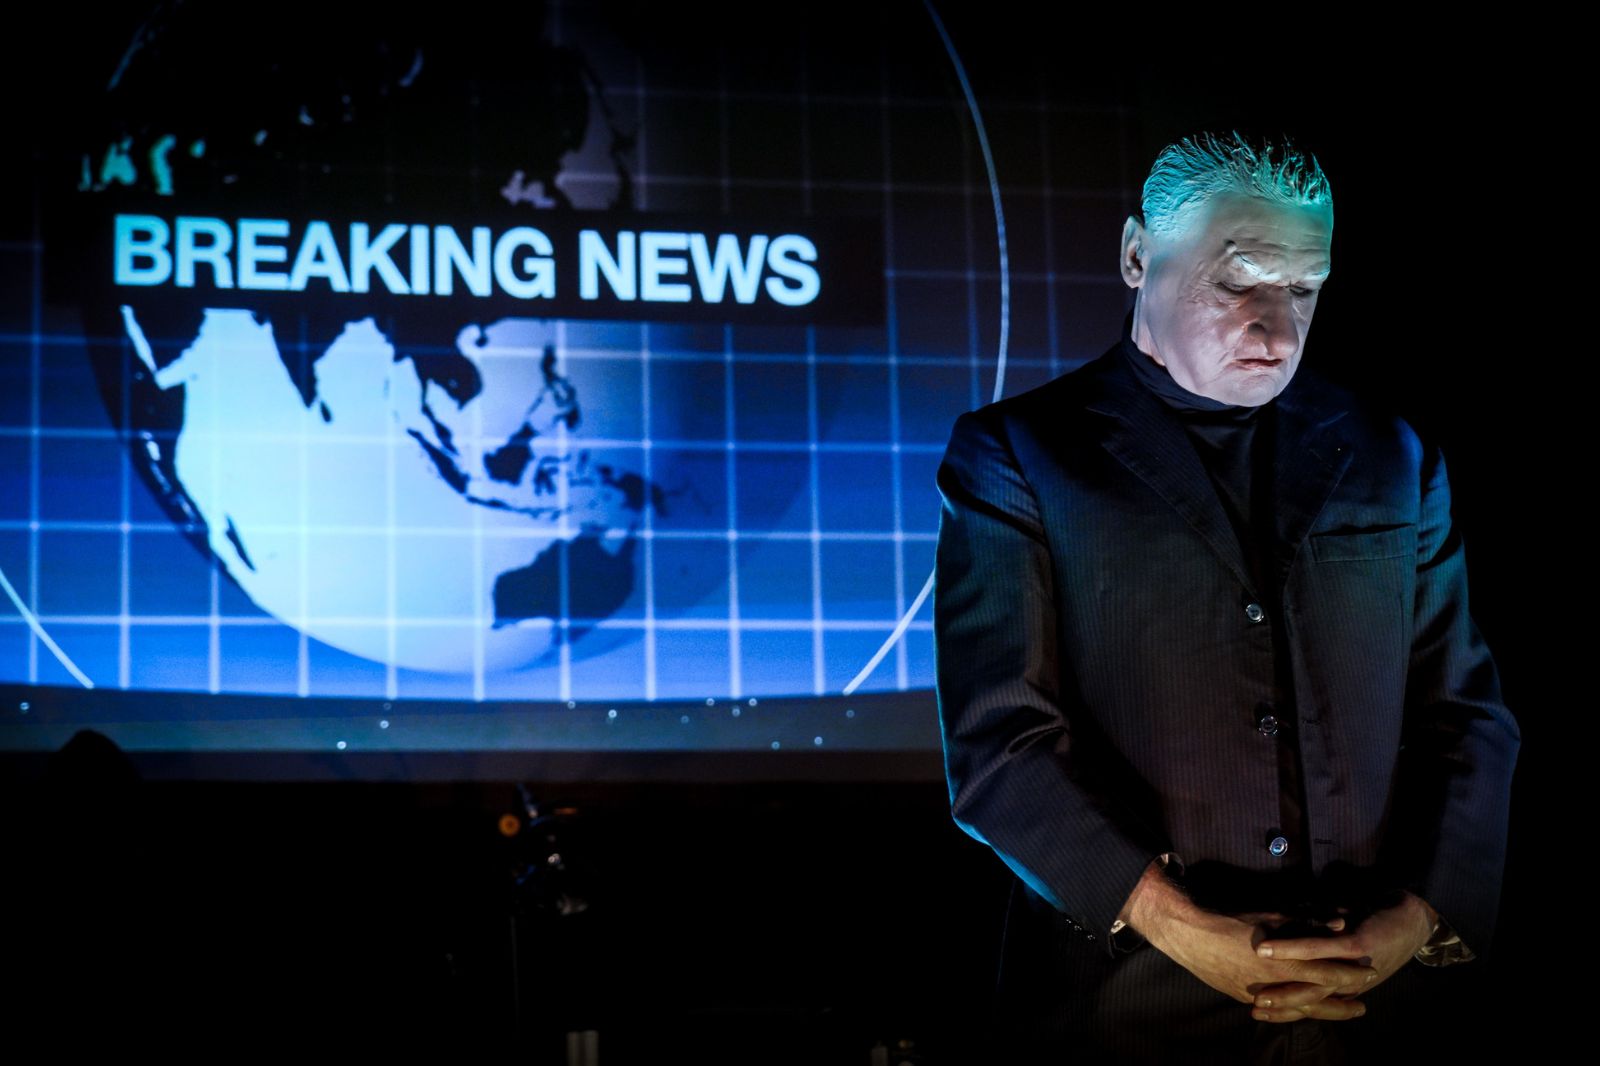 In foto, un uomo indossa una maschera dando le spalle a uno schermo dove viene proiettato il notiziario